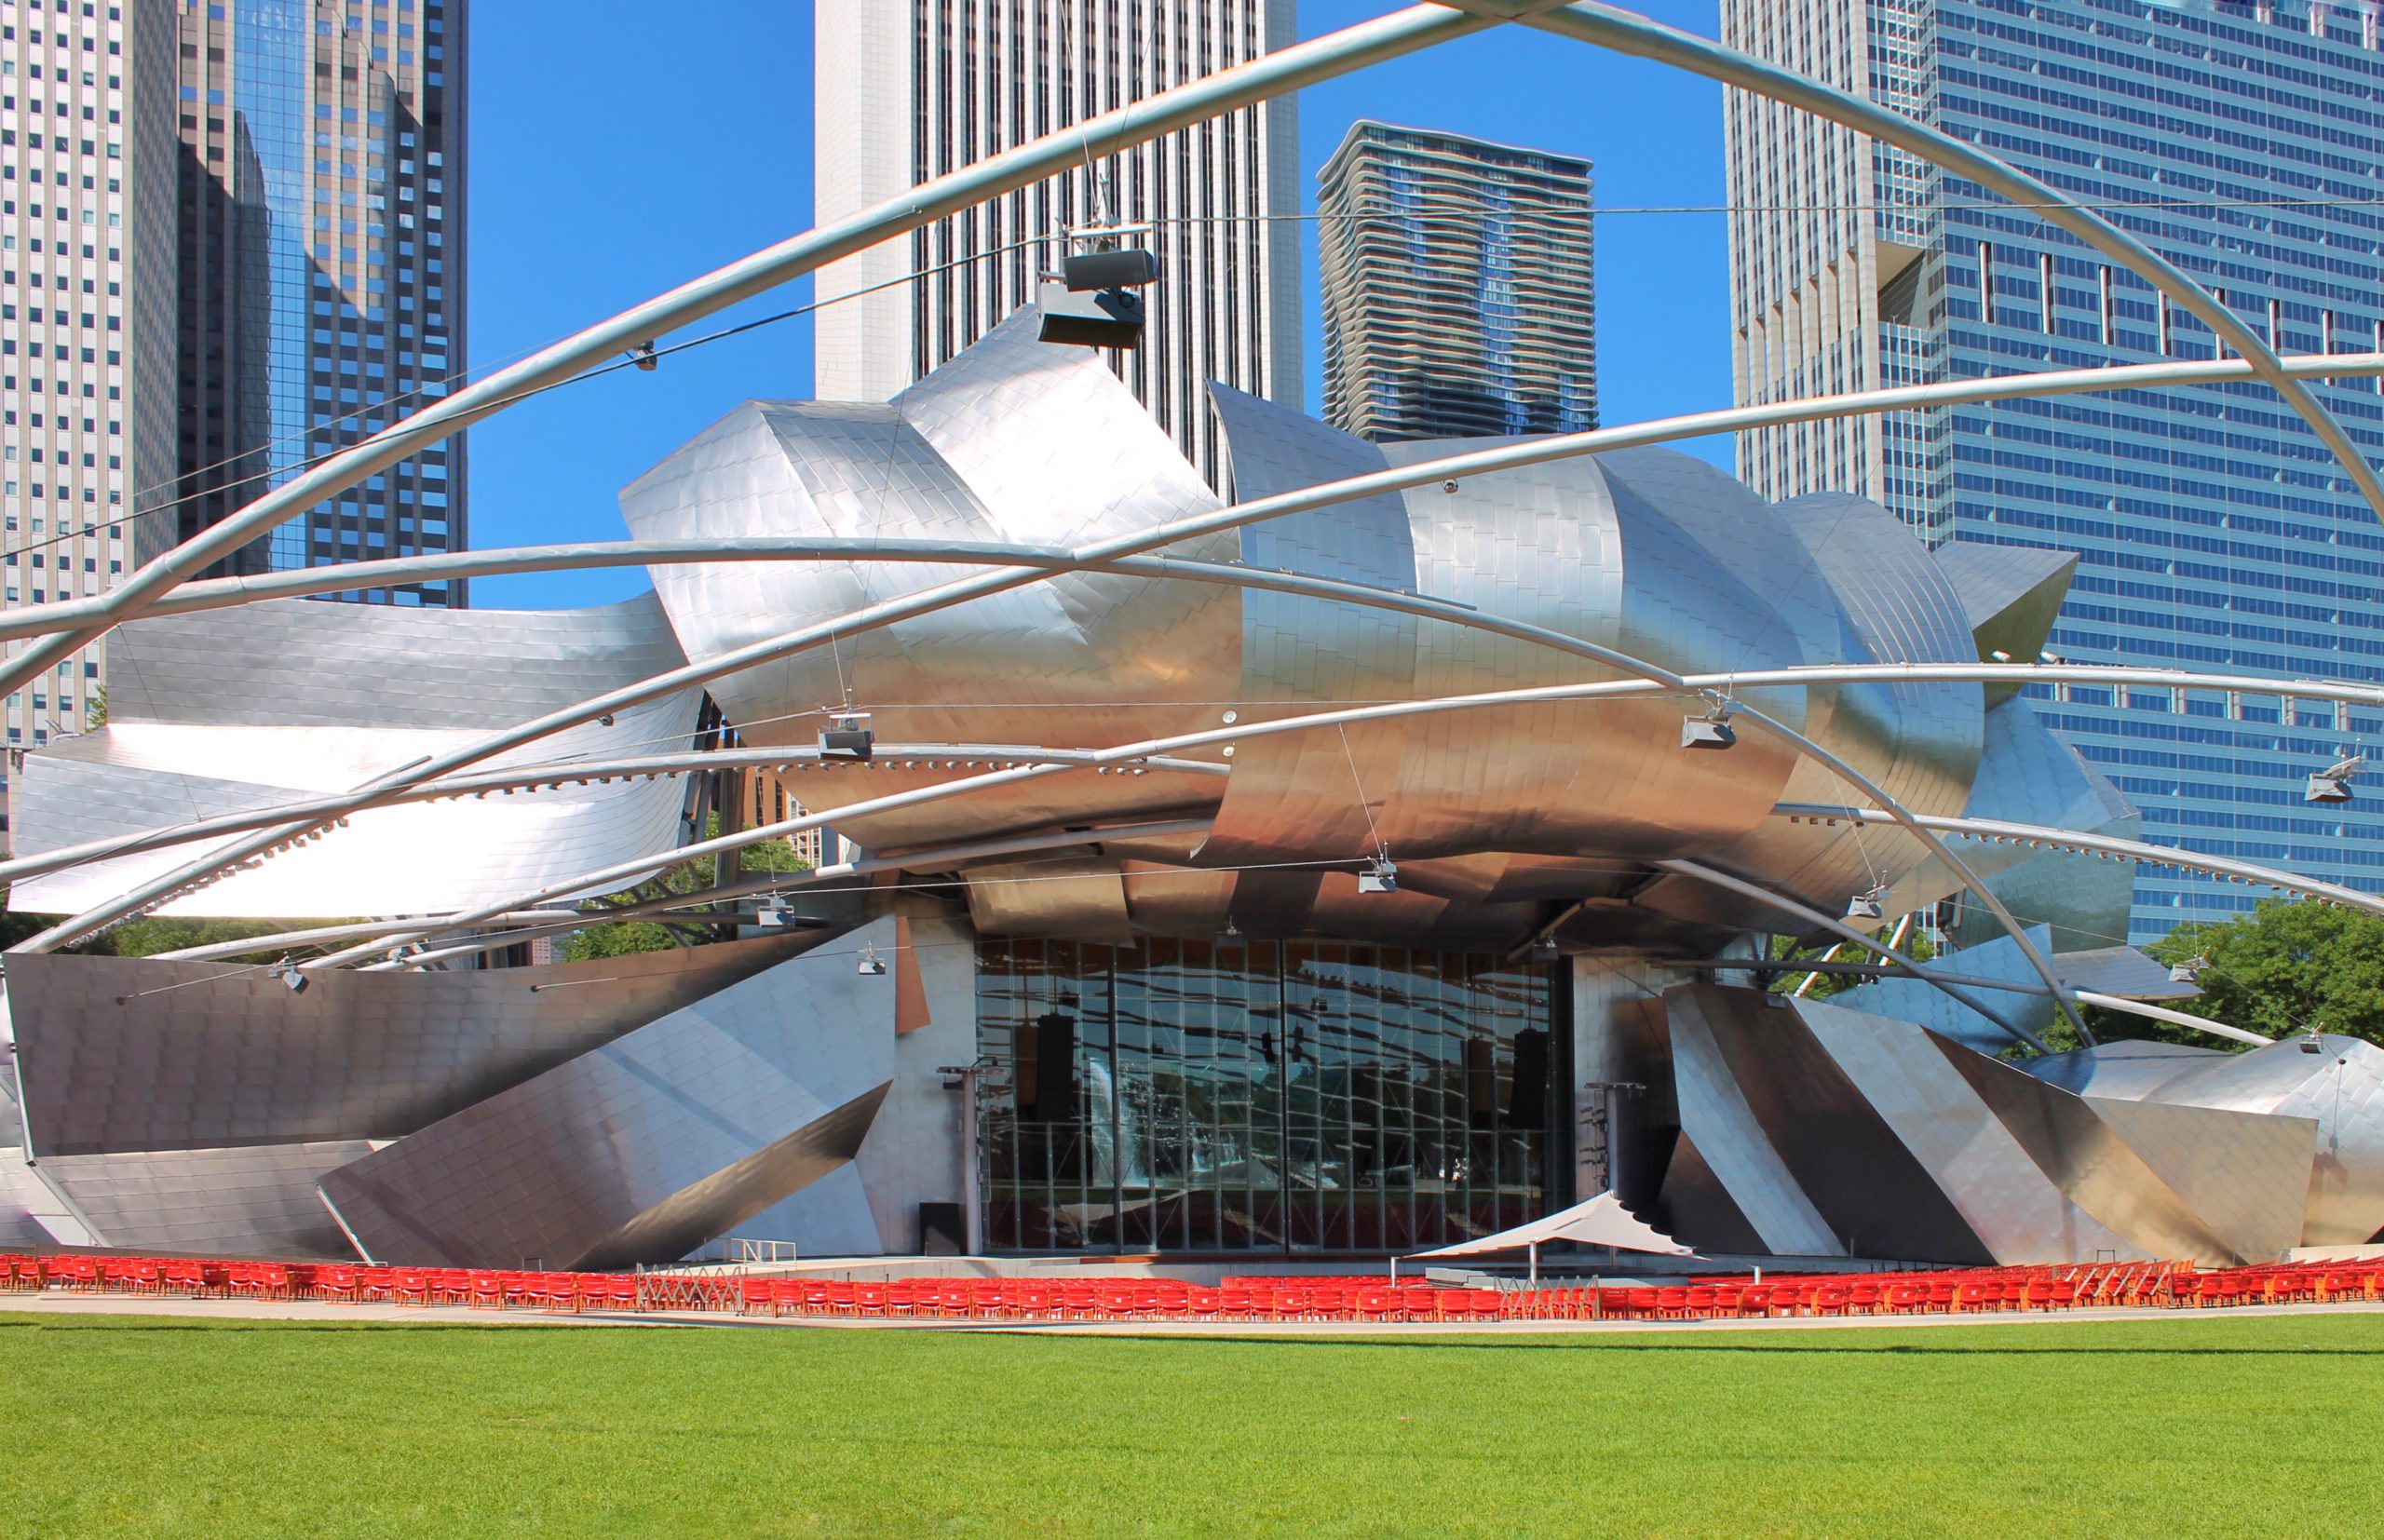 Der Jay Pritzker Pavilion ist eines der bedeutendsten Freiluft-Amphitheater in Chicago